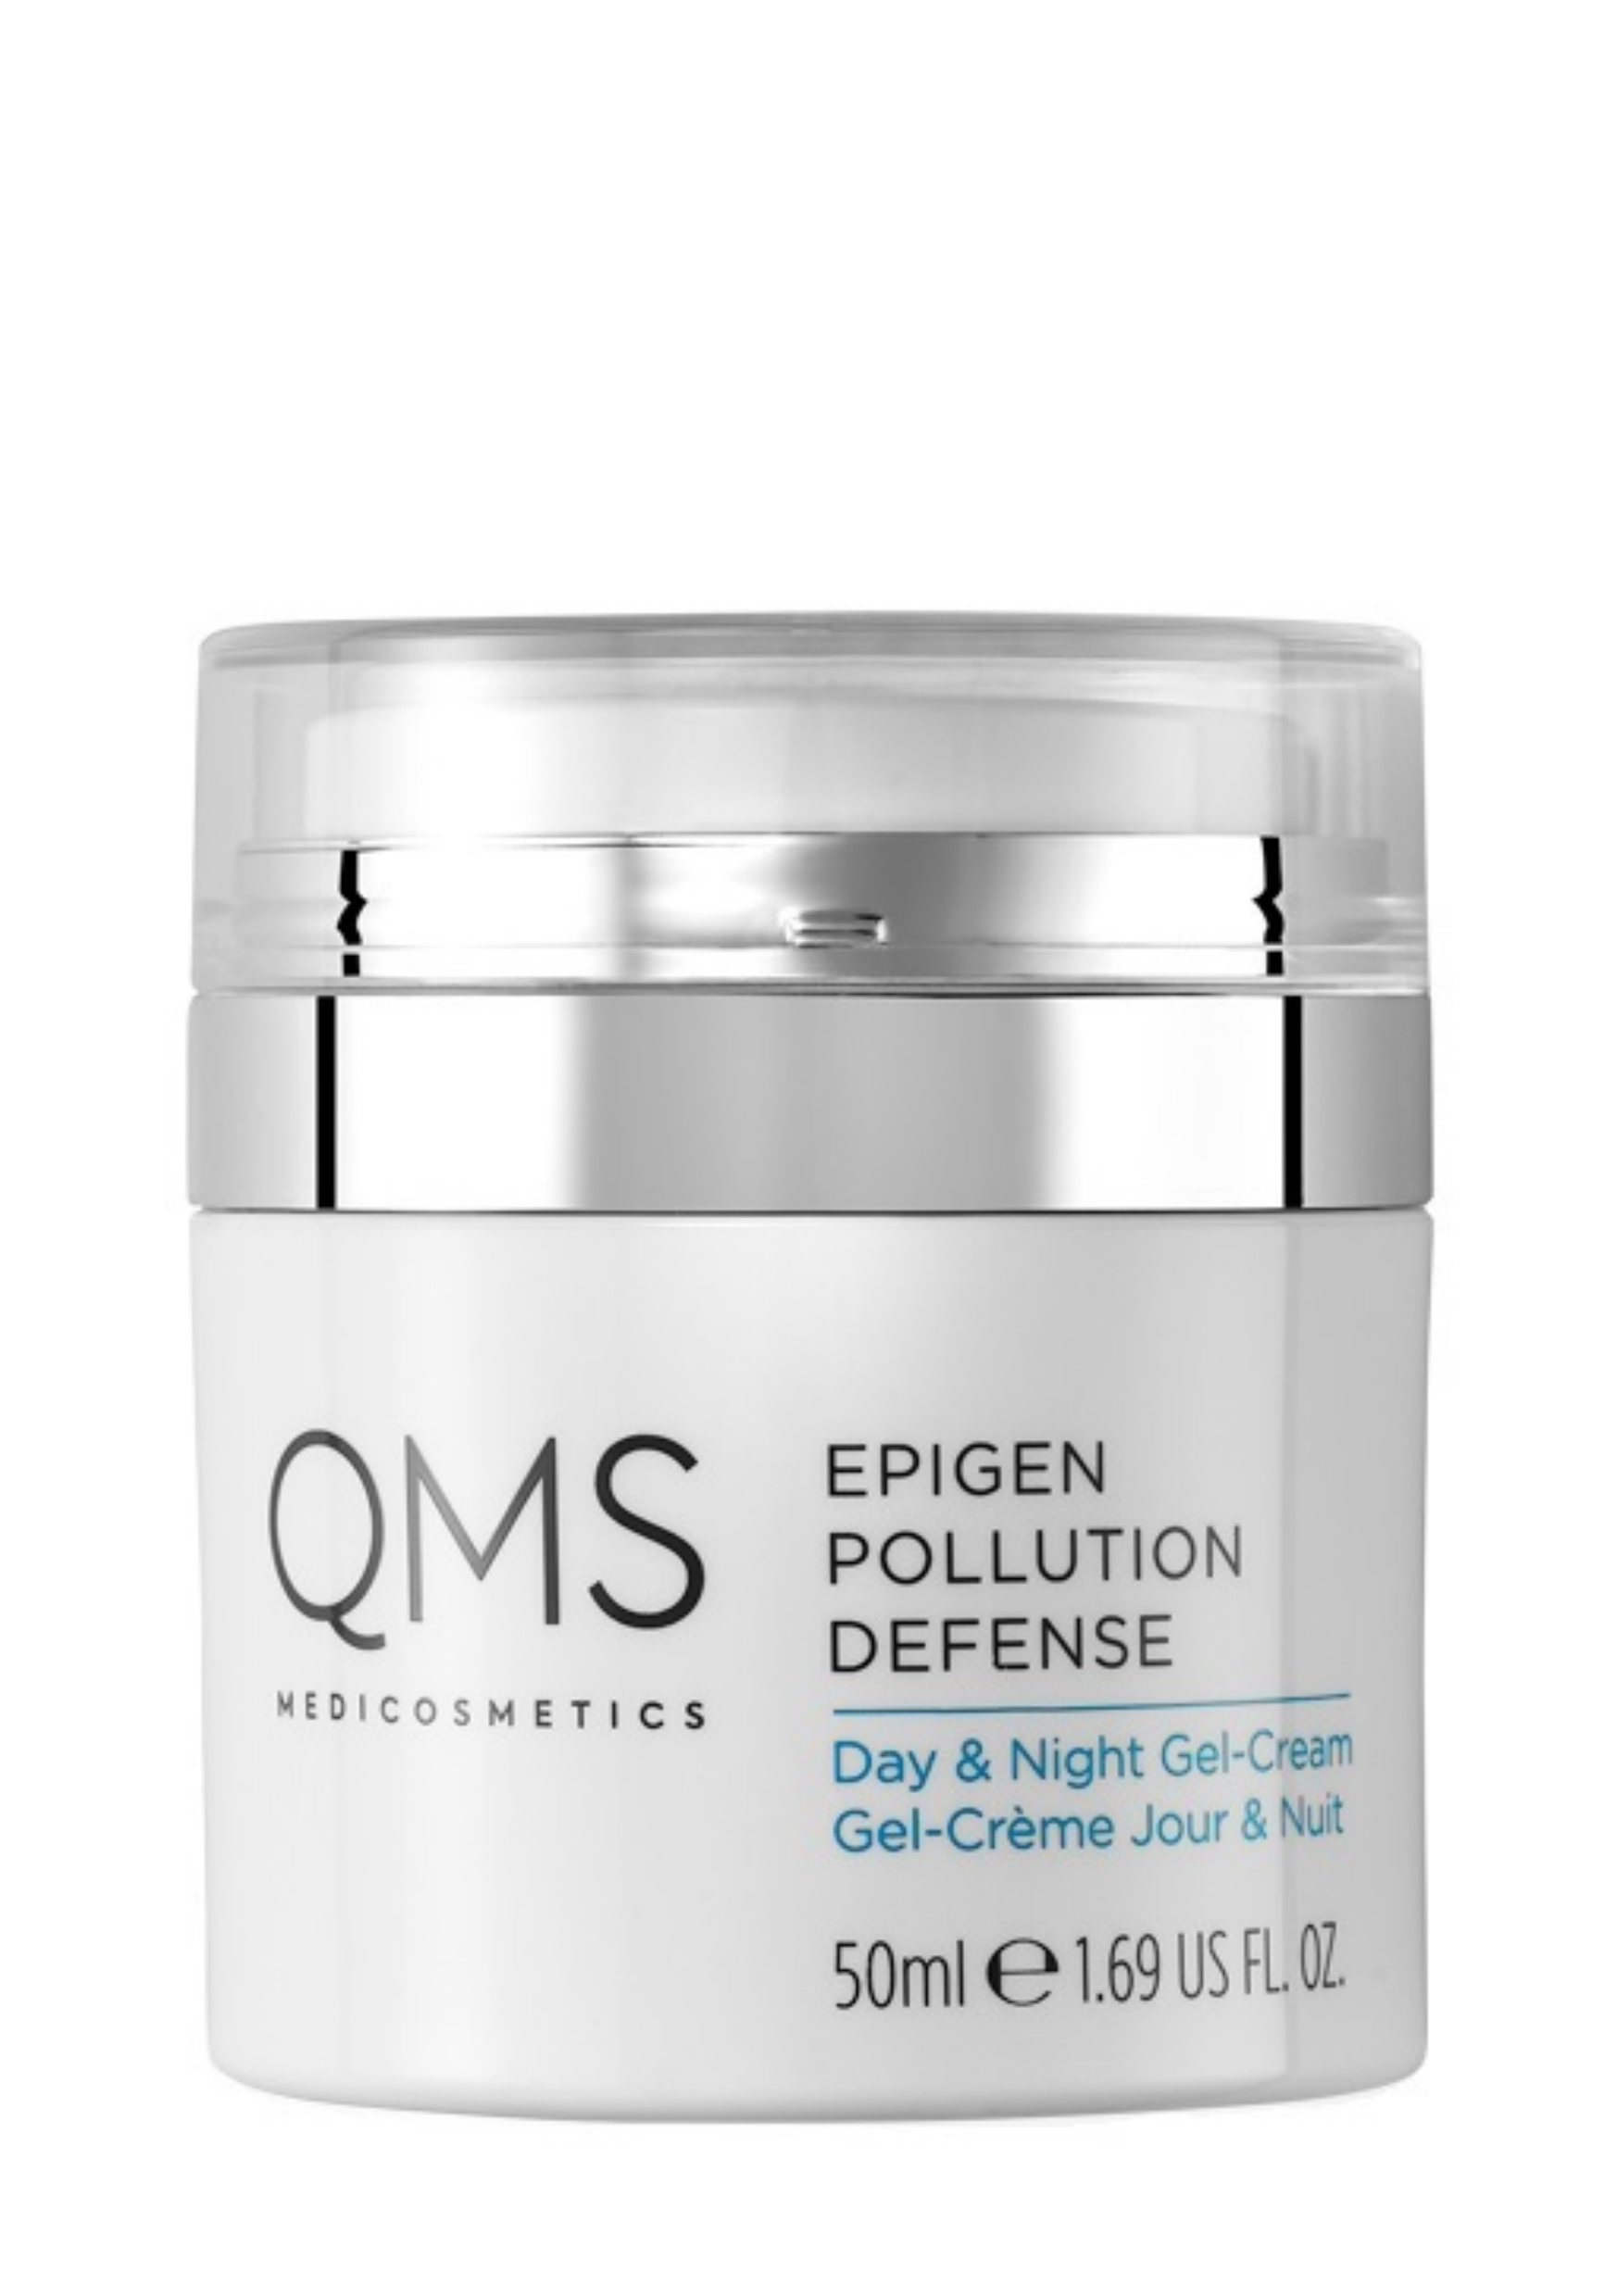 QMS Epigen Pollution Defense Day & Night Gel Cream